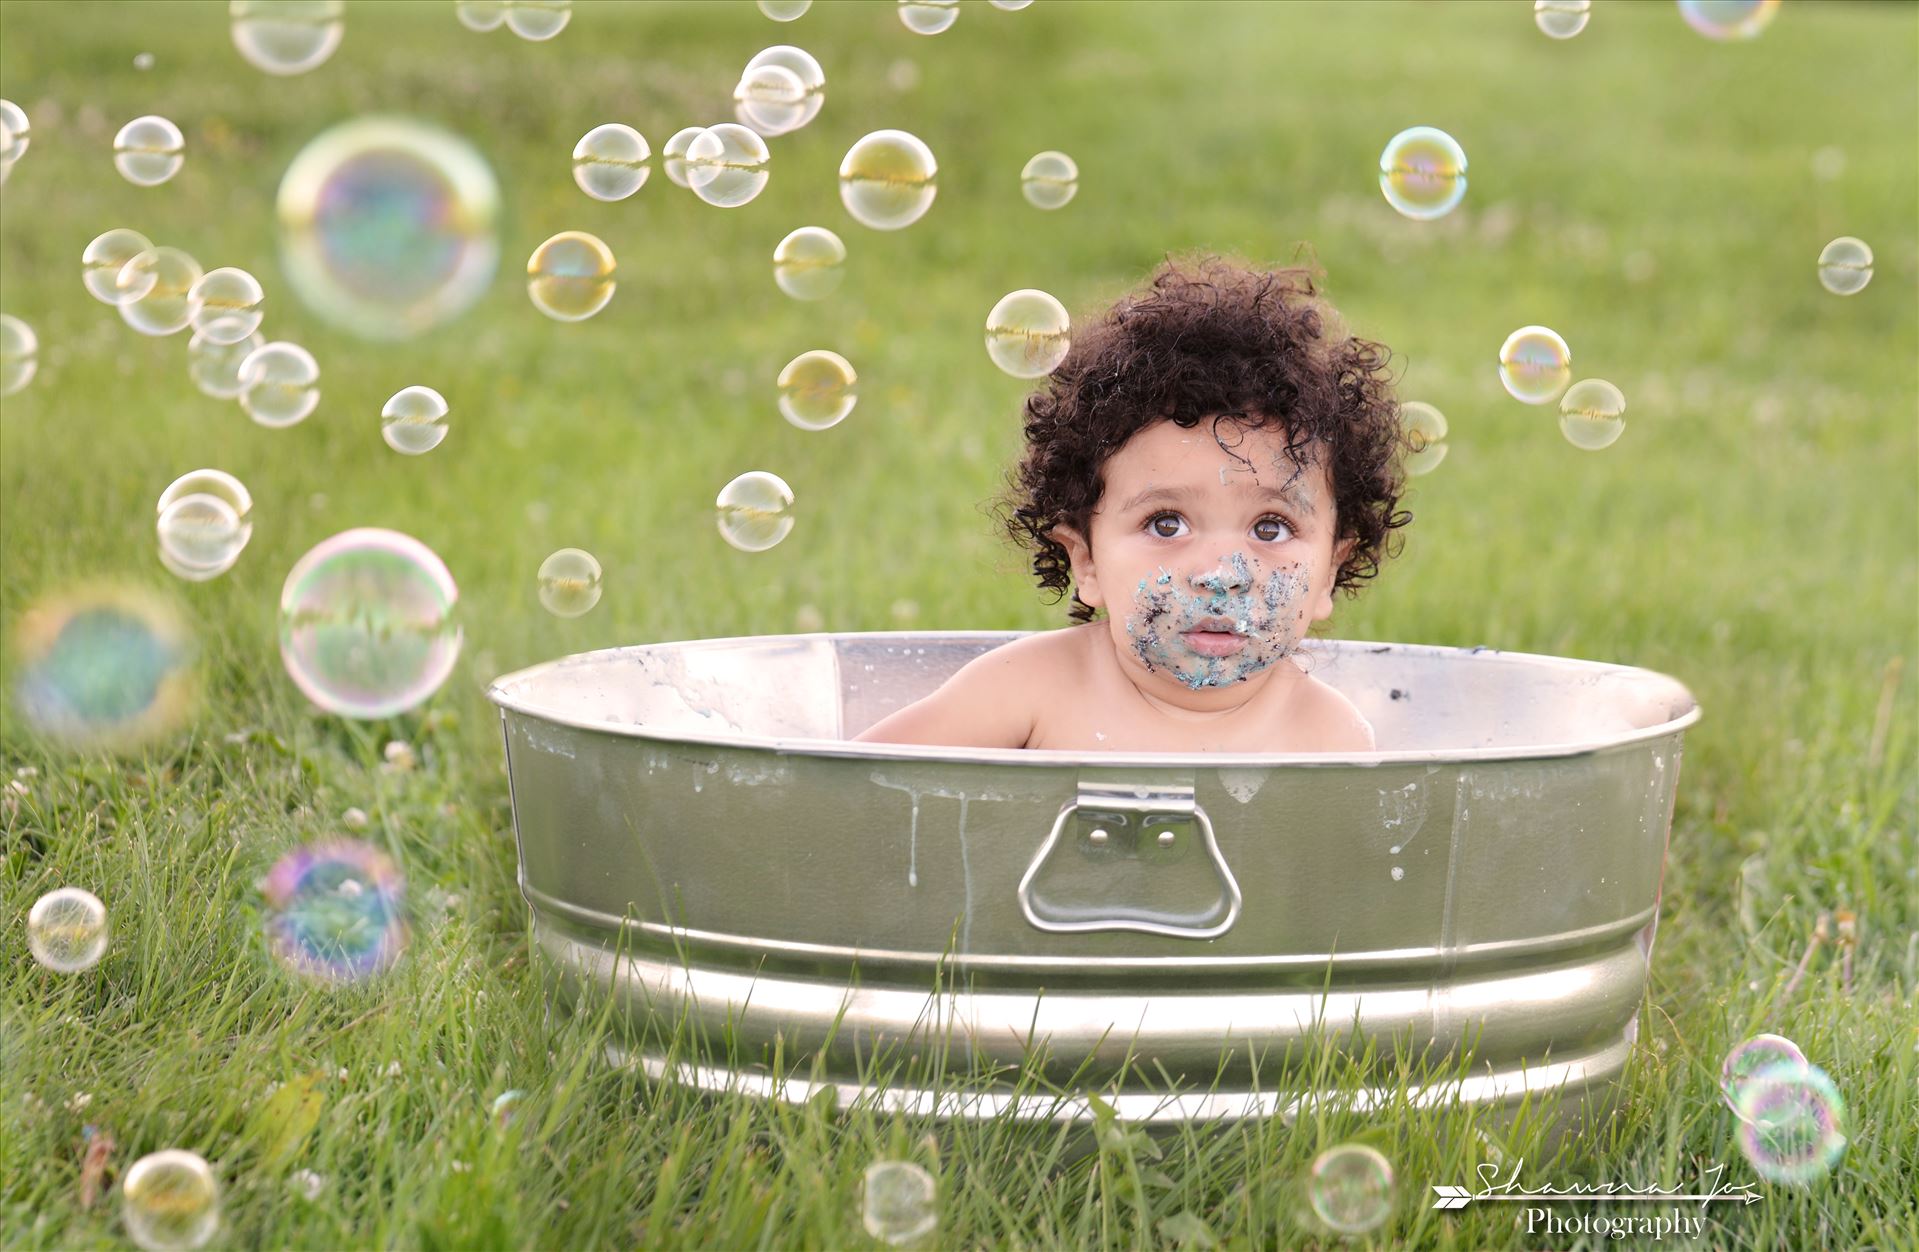 Rub a Dub Dub.jpeg Rub a dub dub, look at this cutie in a tub! by Shawna Jo Photography